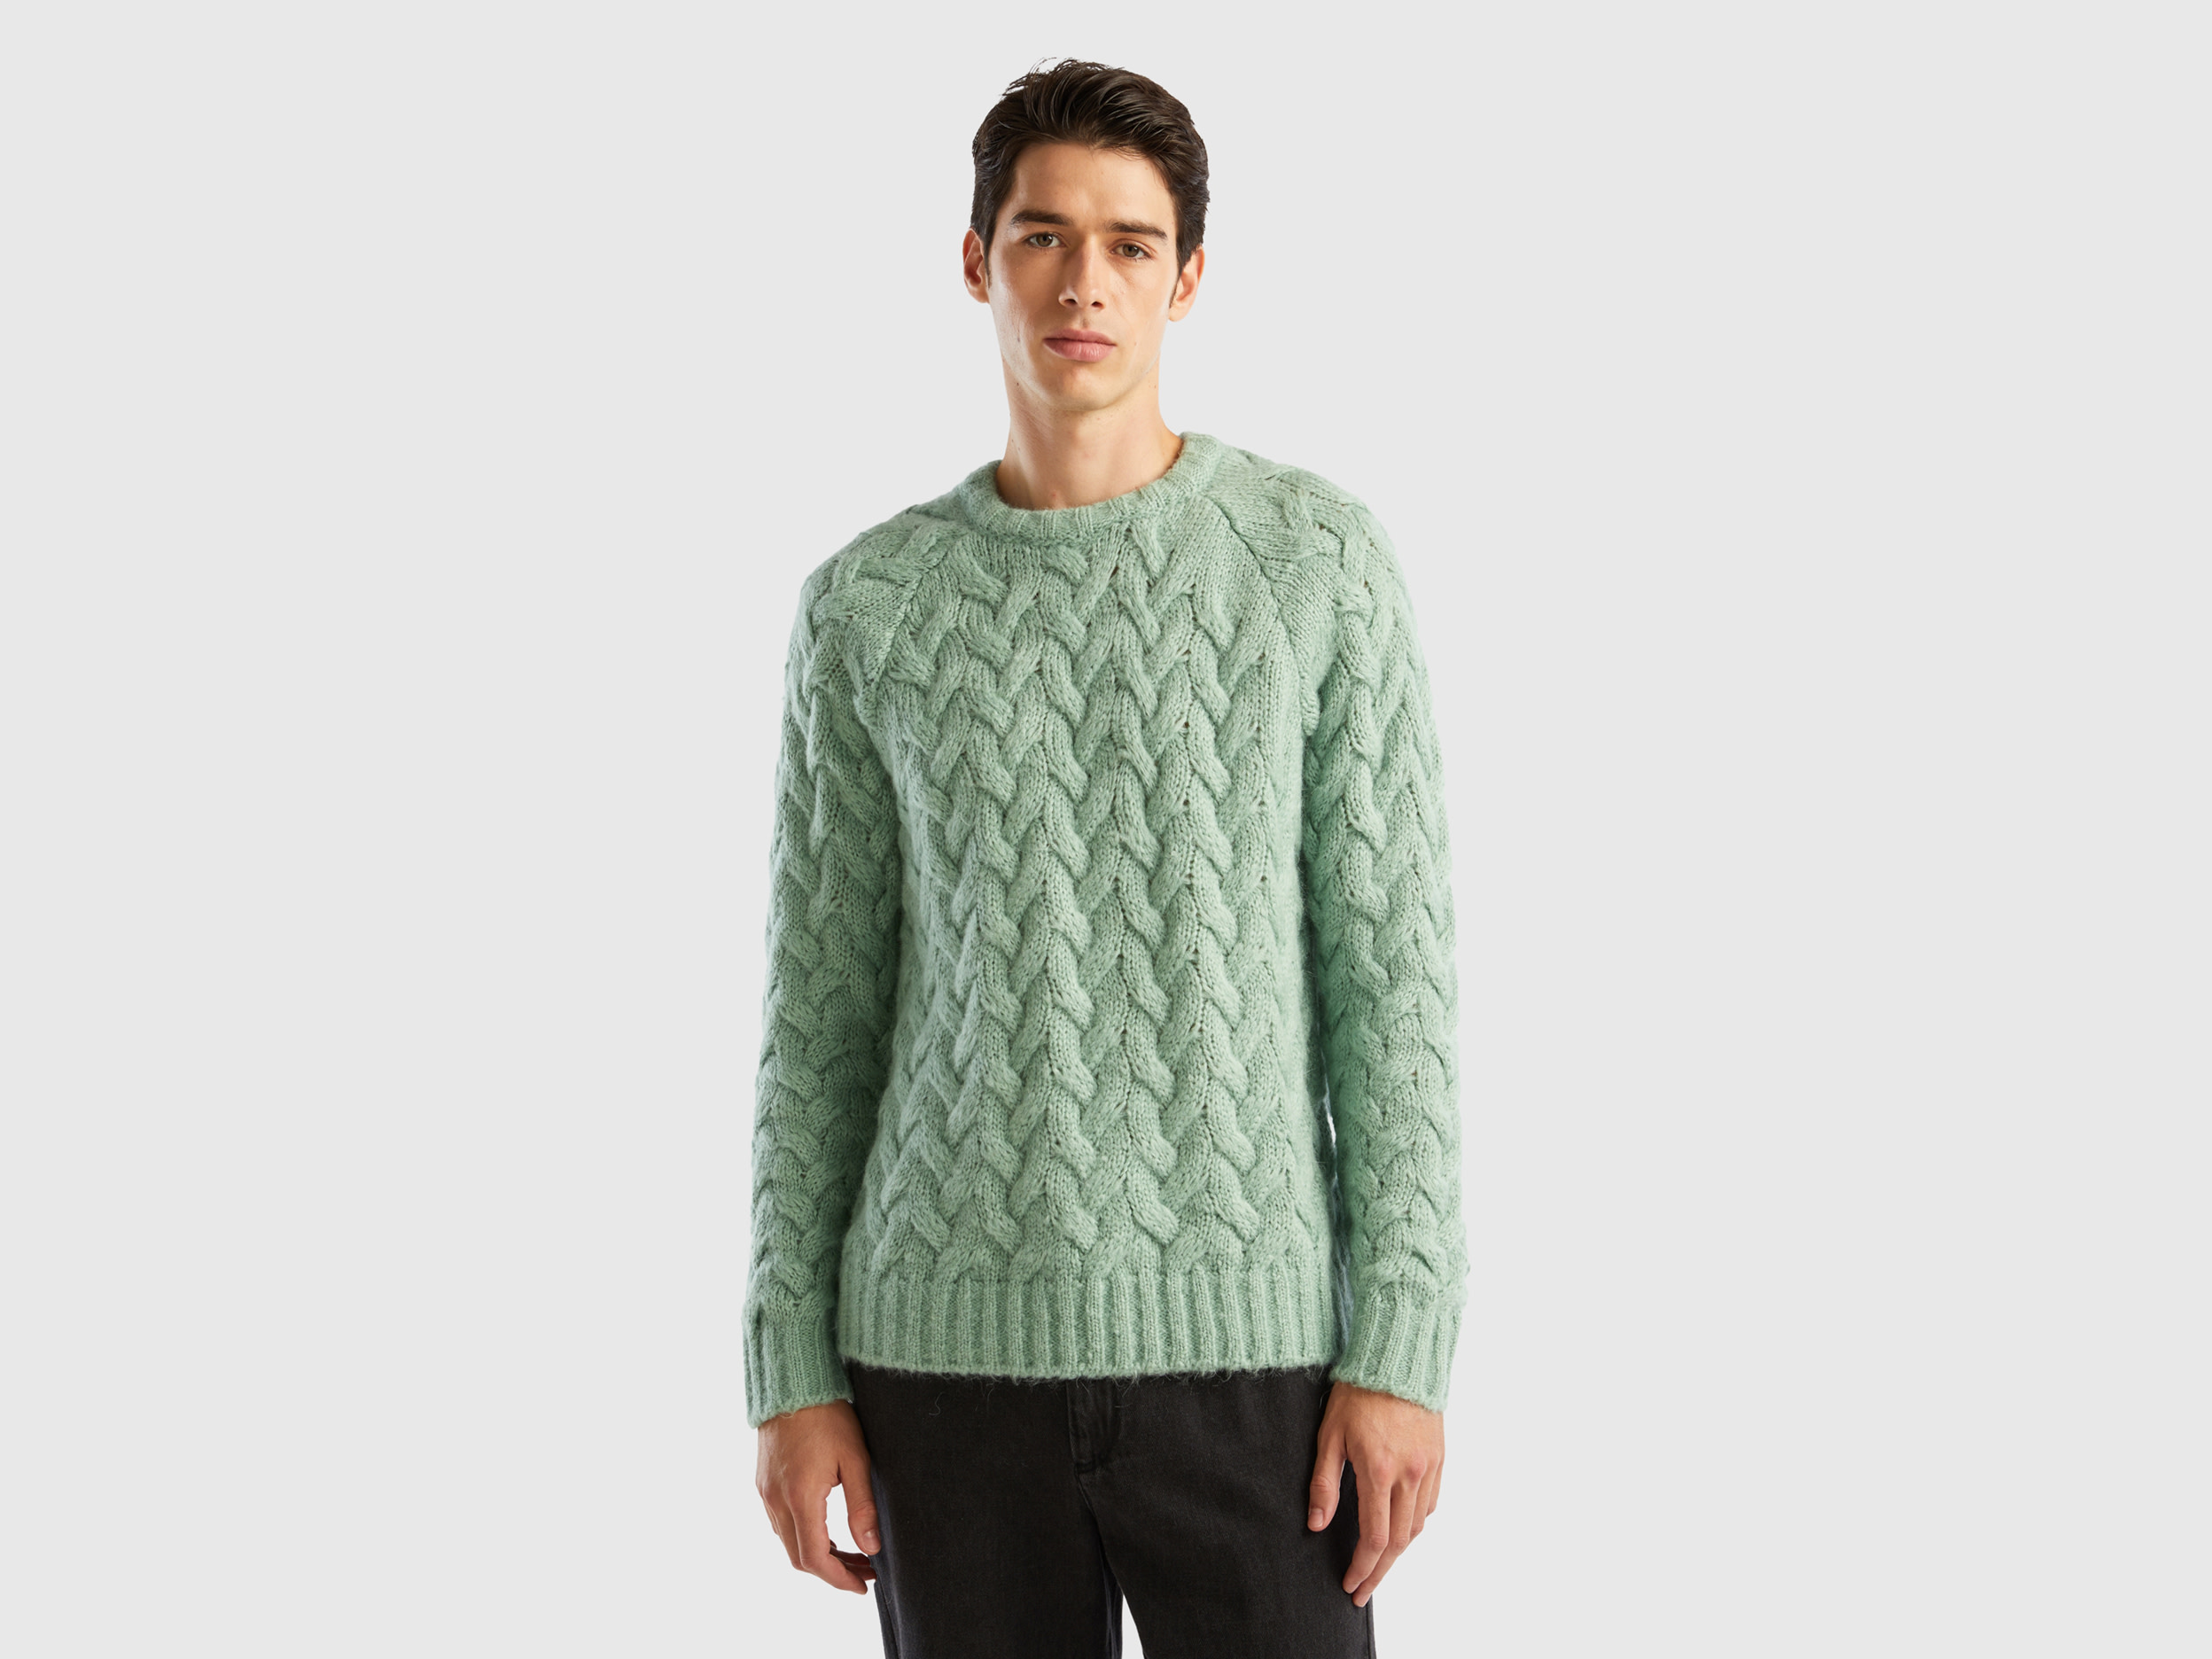 Benetton, Mohair Blend Cable Knit Sweater, size XS, Aqua, Men